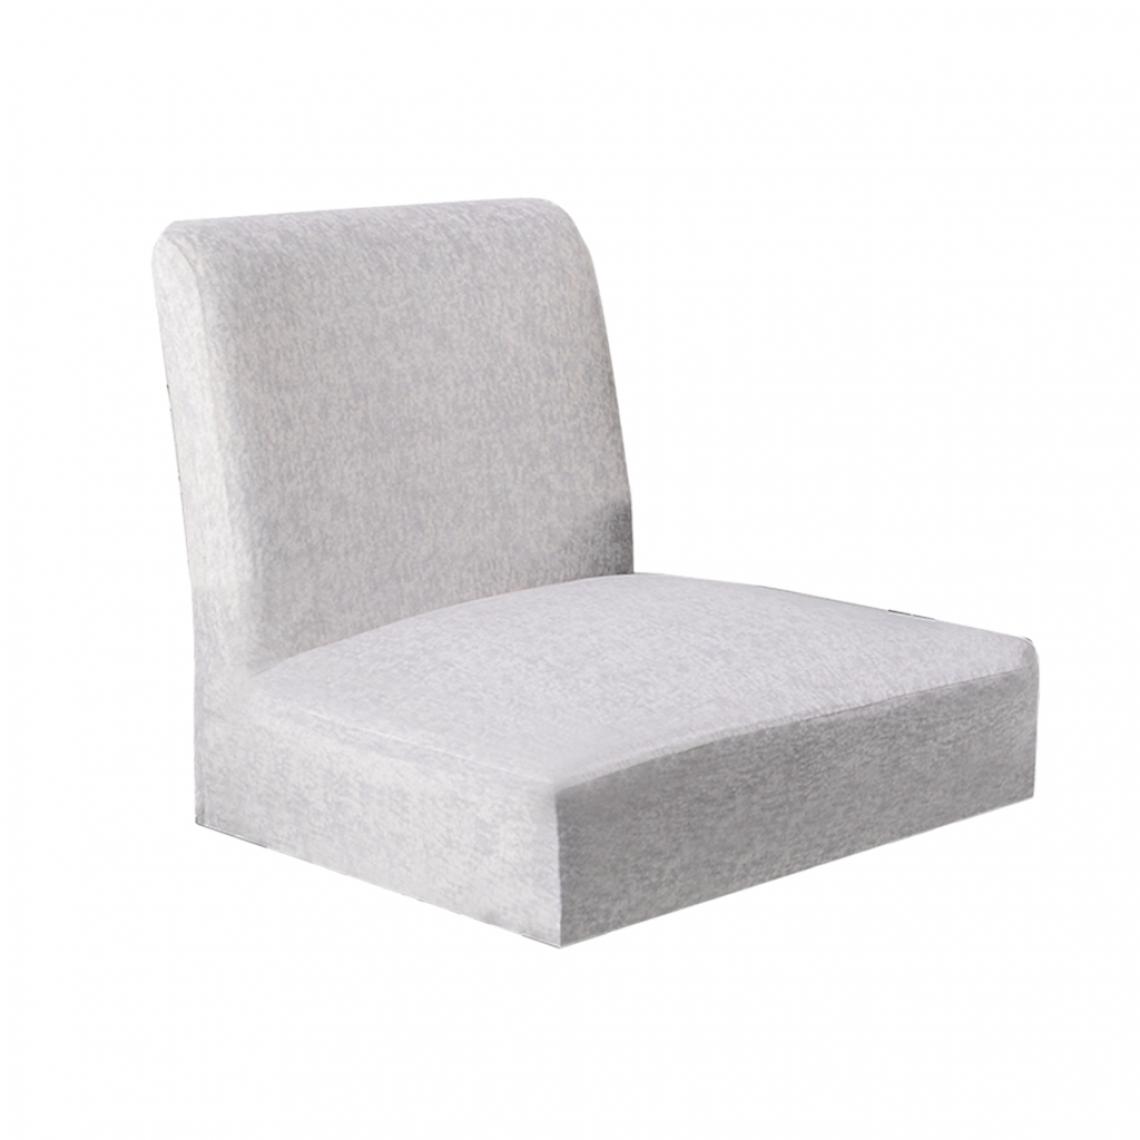 marque generique - housse de chaise stretch housses de chaise pour dossier bas chaise de bar tabouret chaise beige - Tiroir coulissant